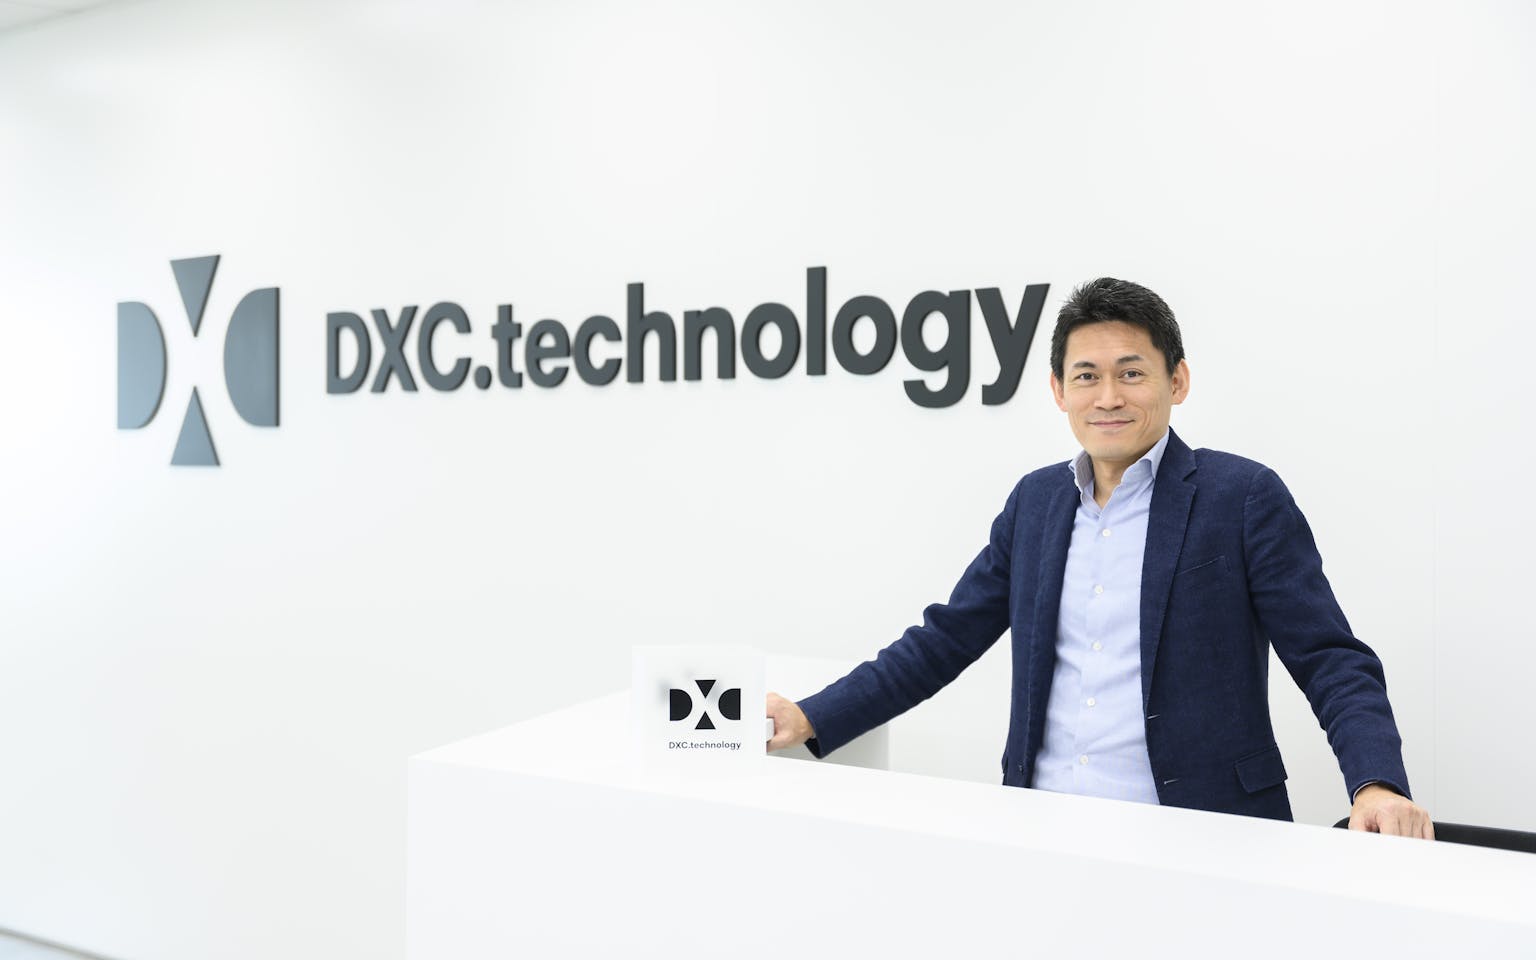 真のグローバルITサービスを提供するDXCテクノロジーとともに、日本のDXをリードしませんか？